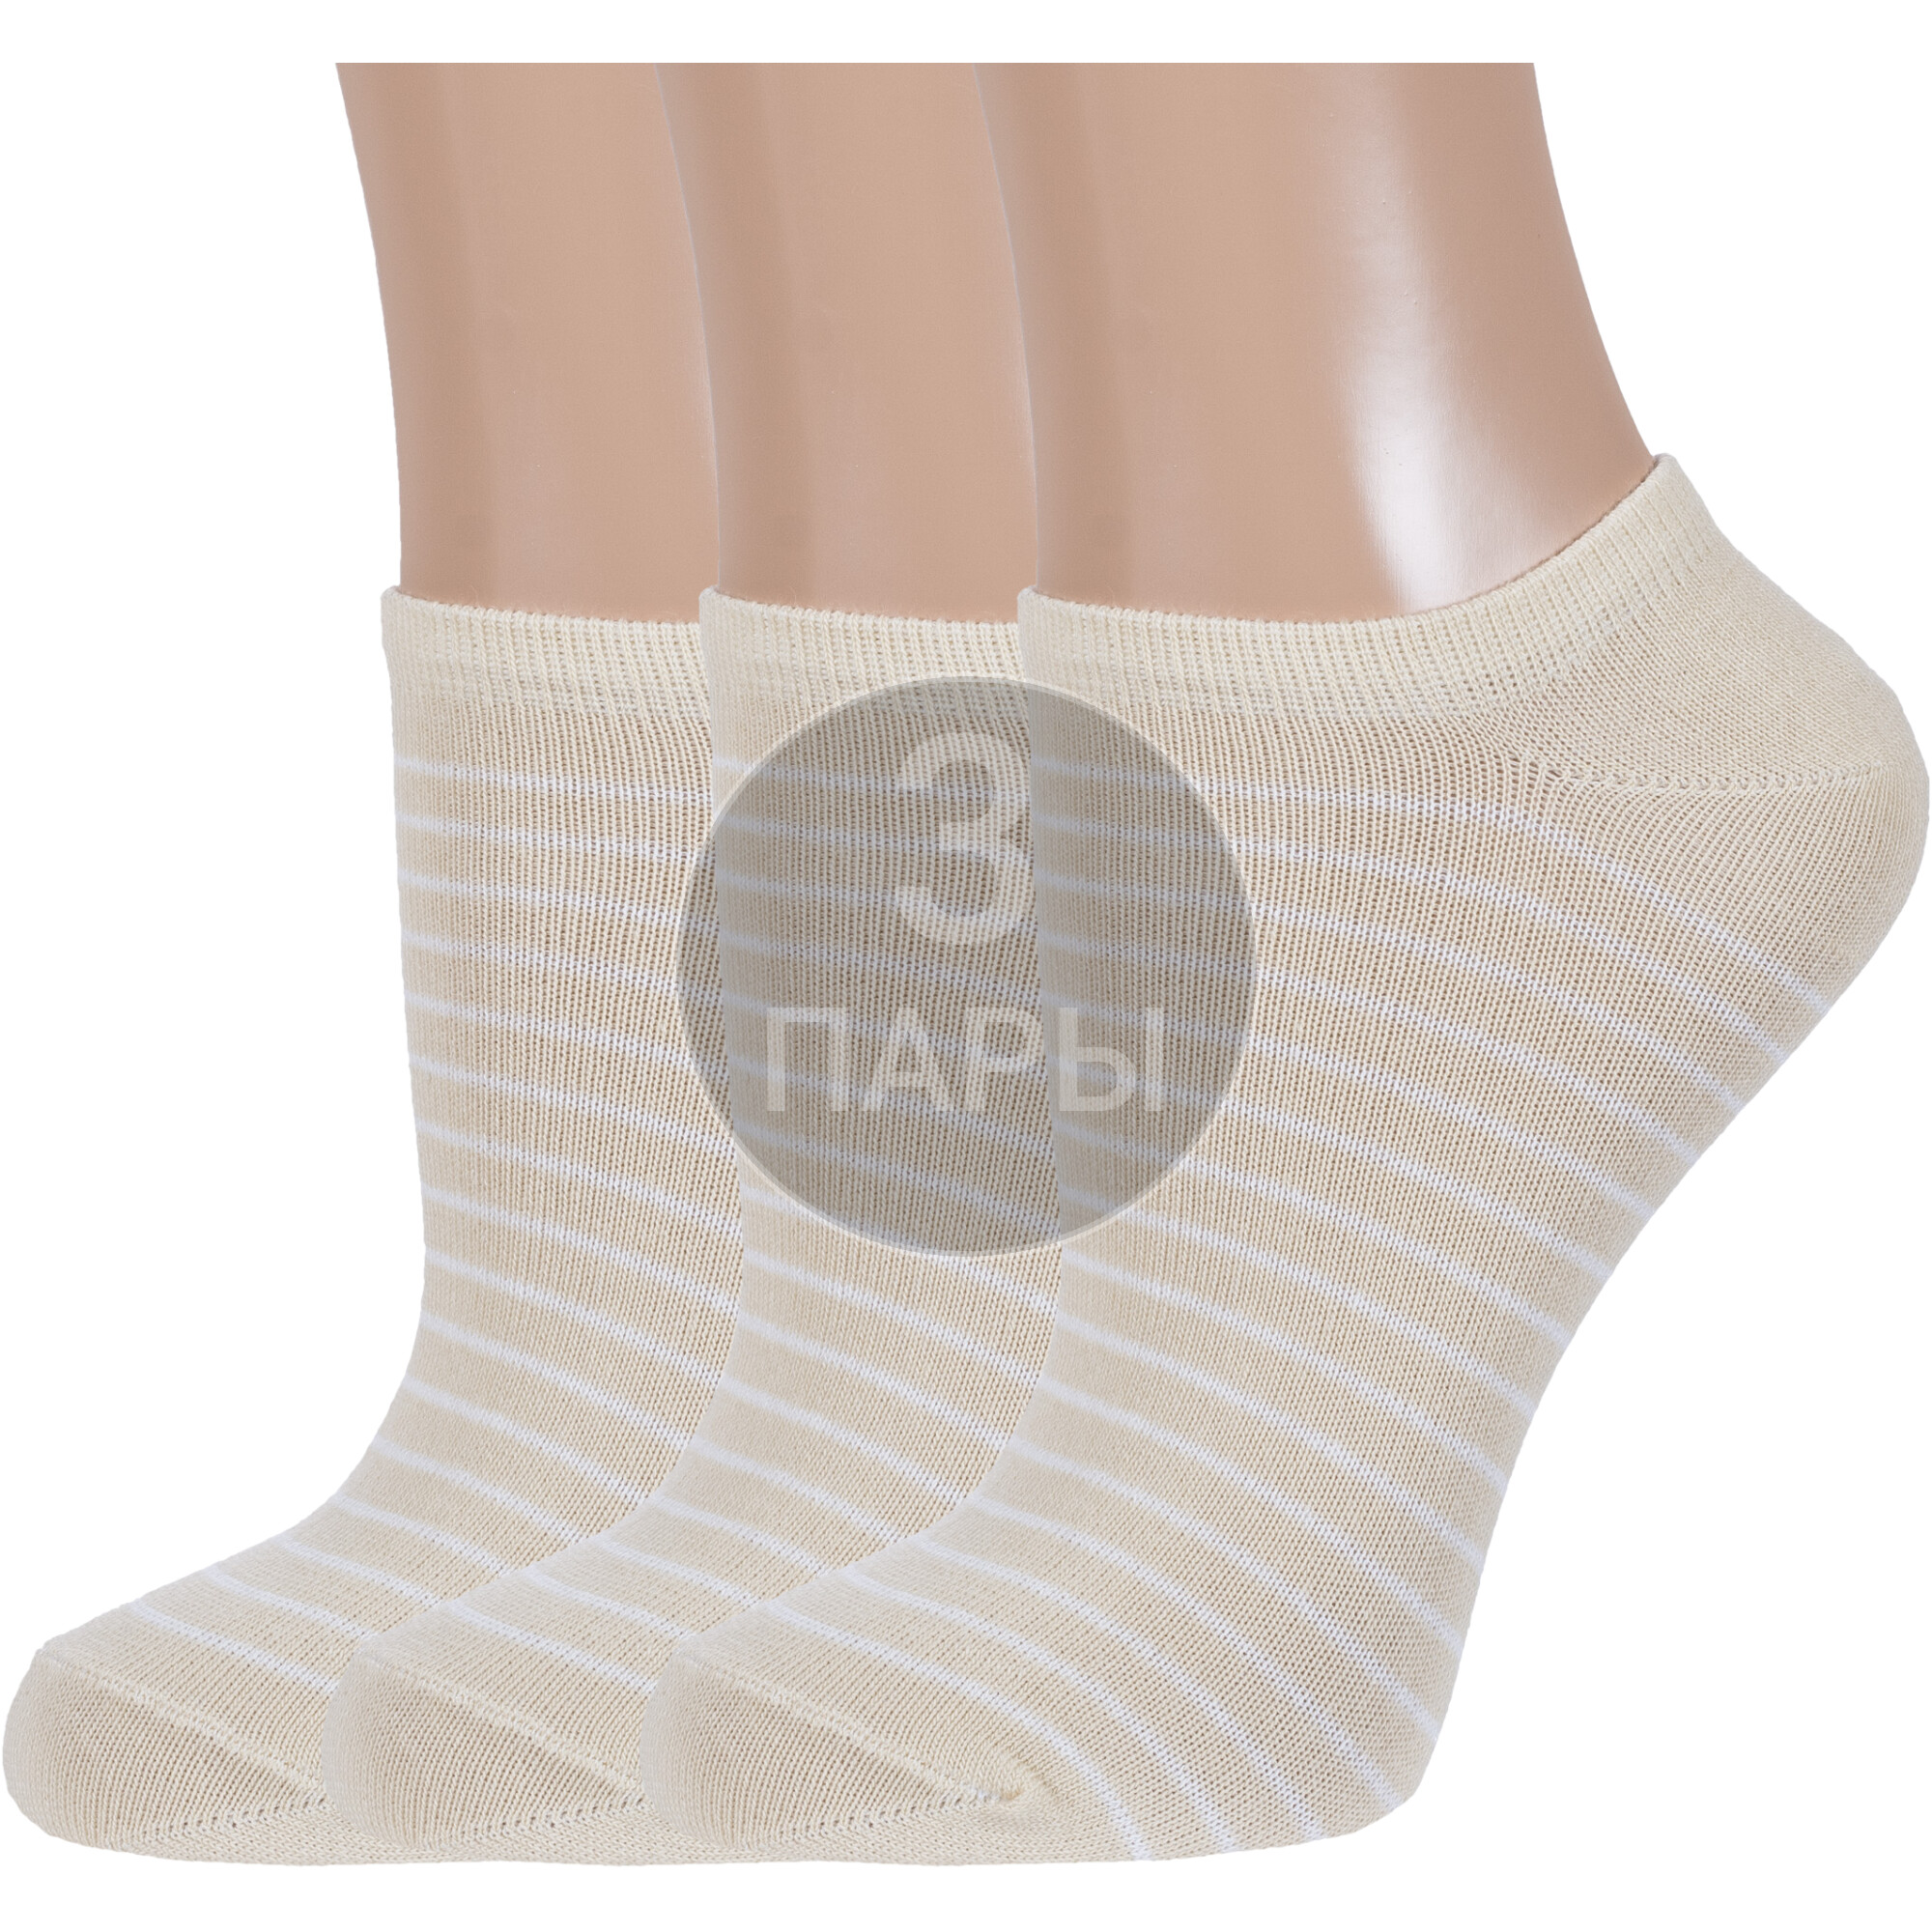 Комплект носков женских Борисоглебский трикотаж 3-6С735 разноцветных 23-25